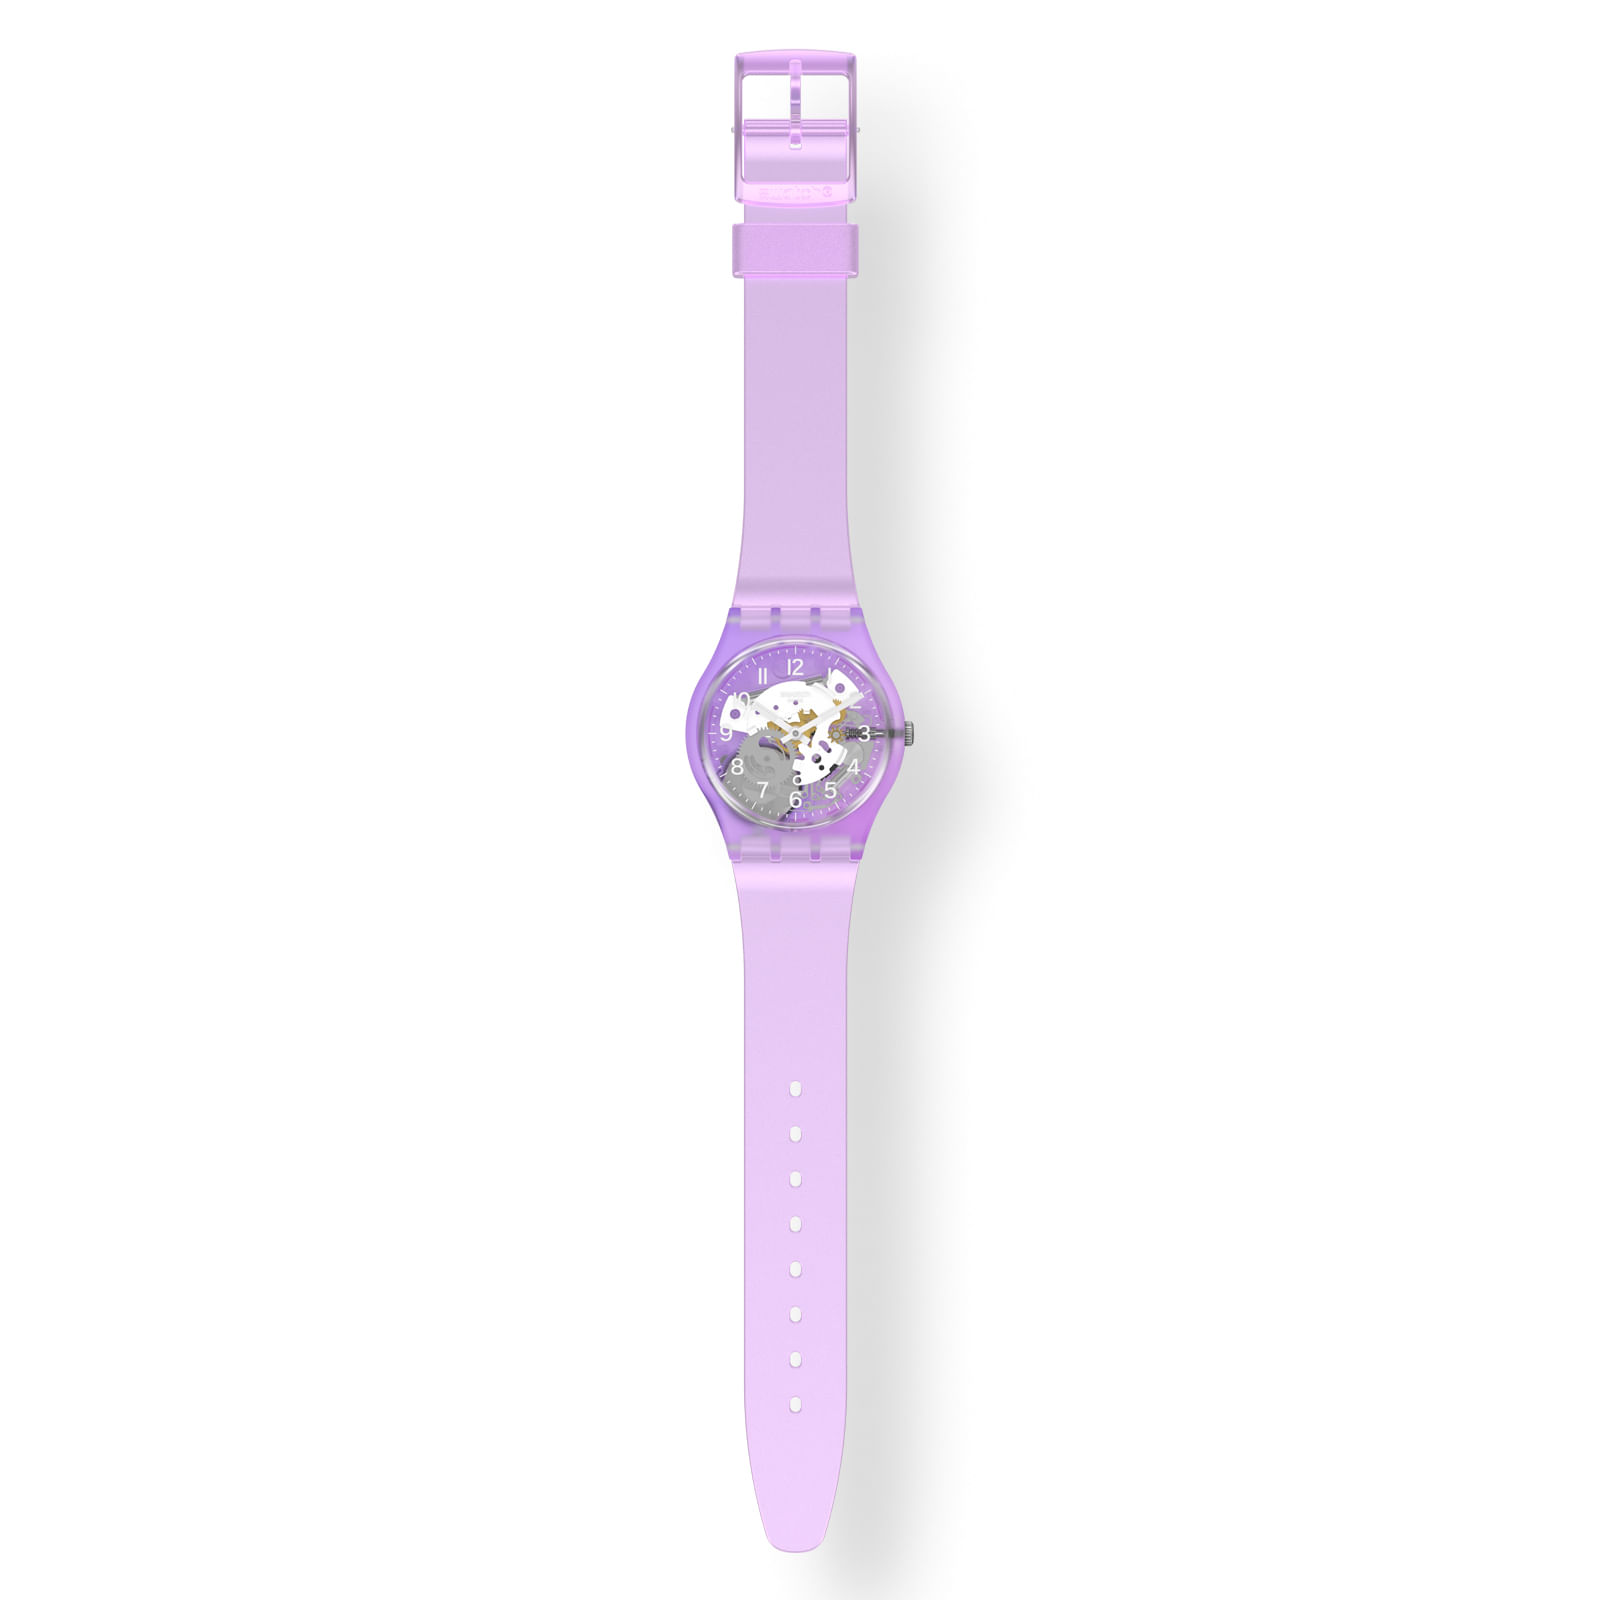 Reloj SWATCH TRAMONTO VIOLA GV136 Purpura